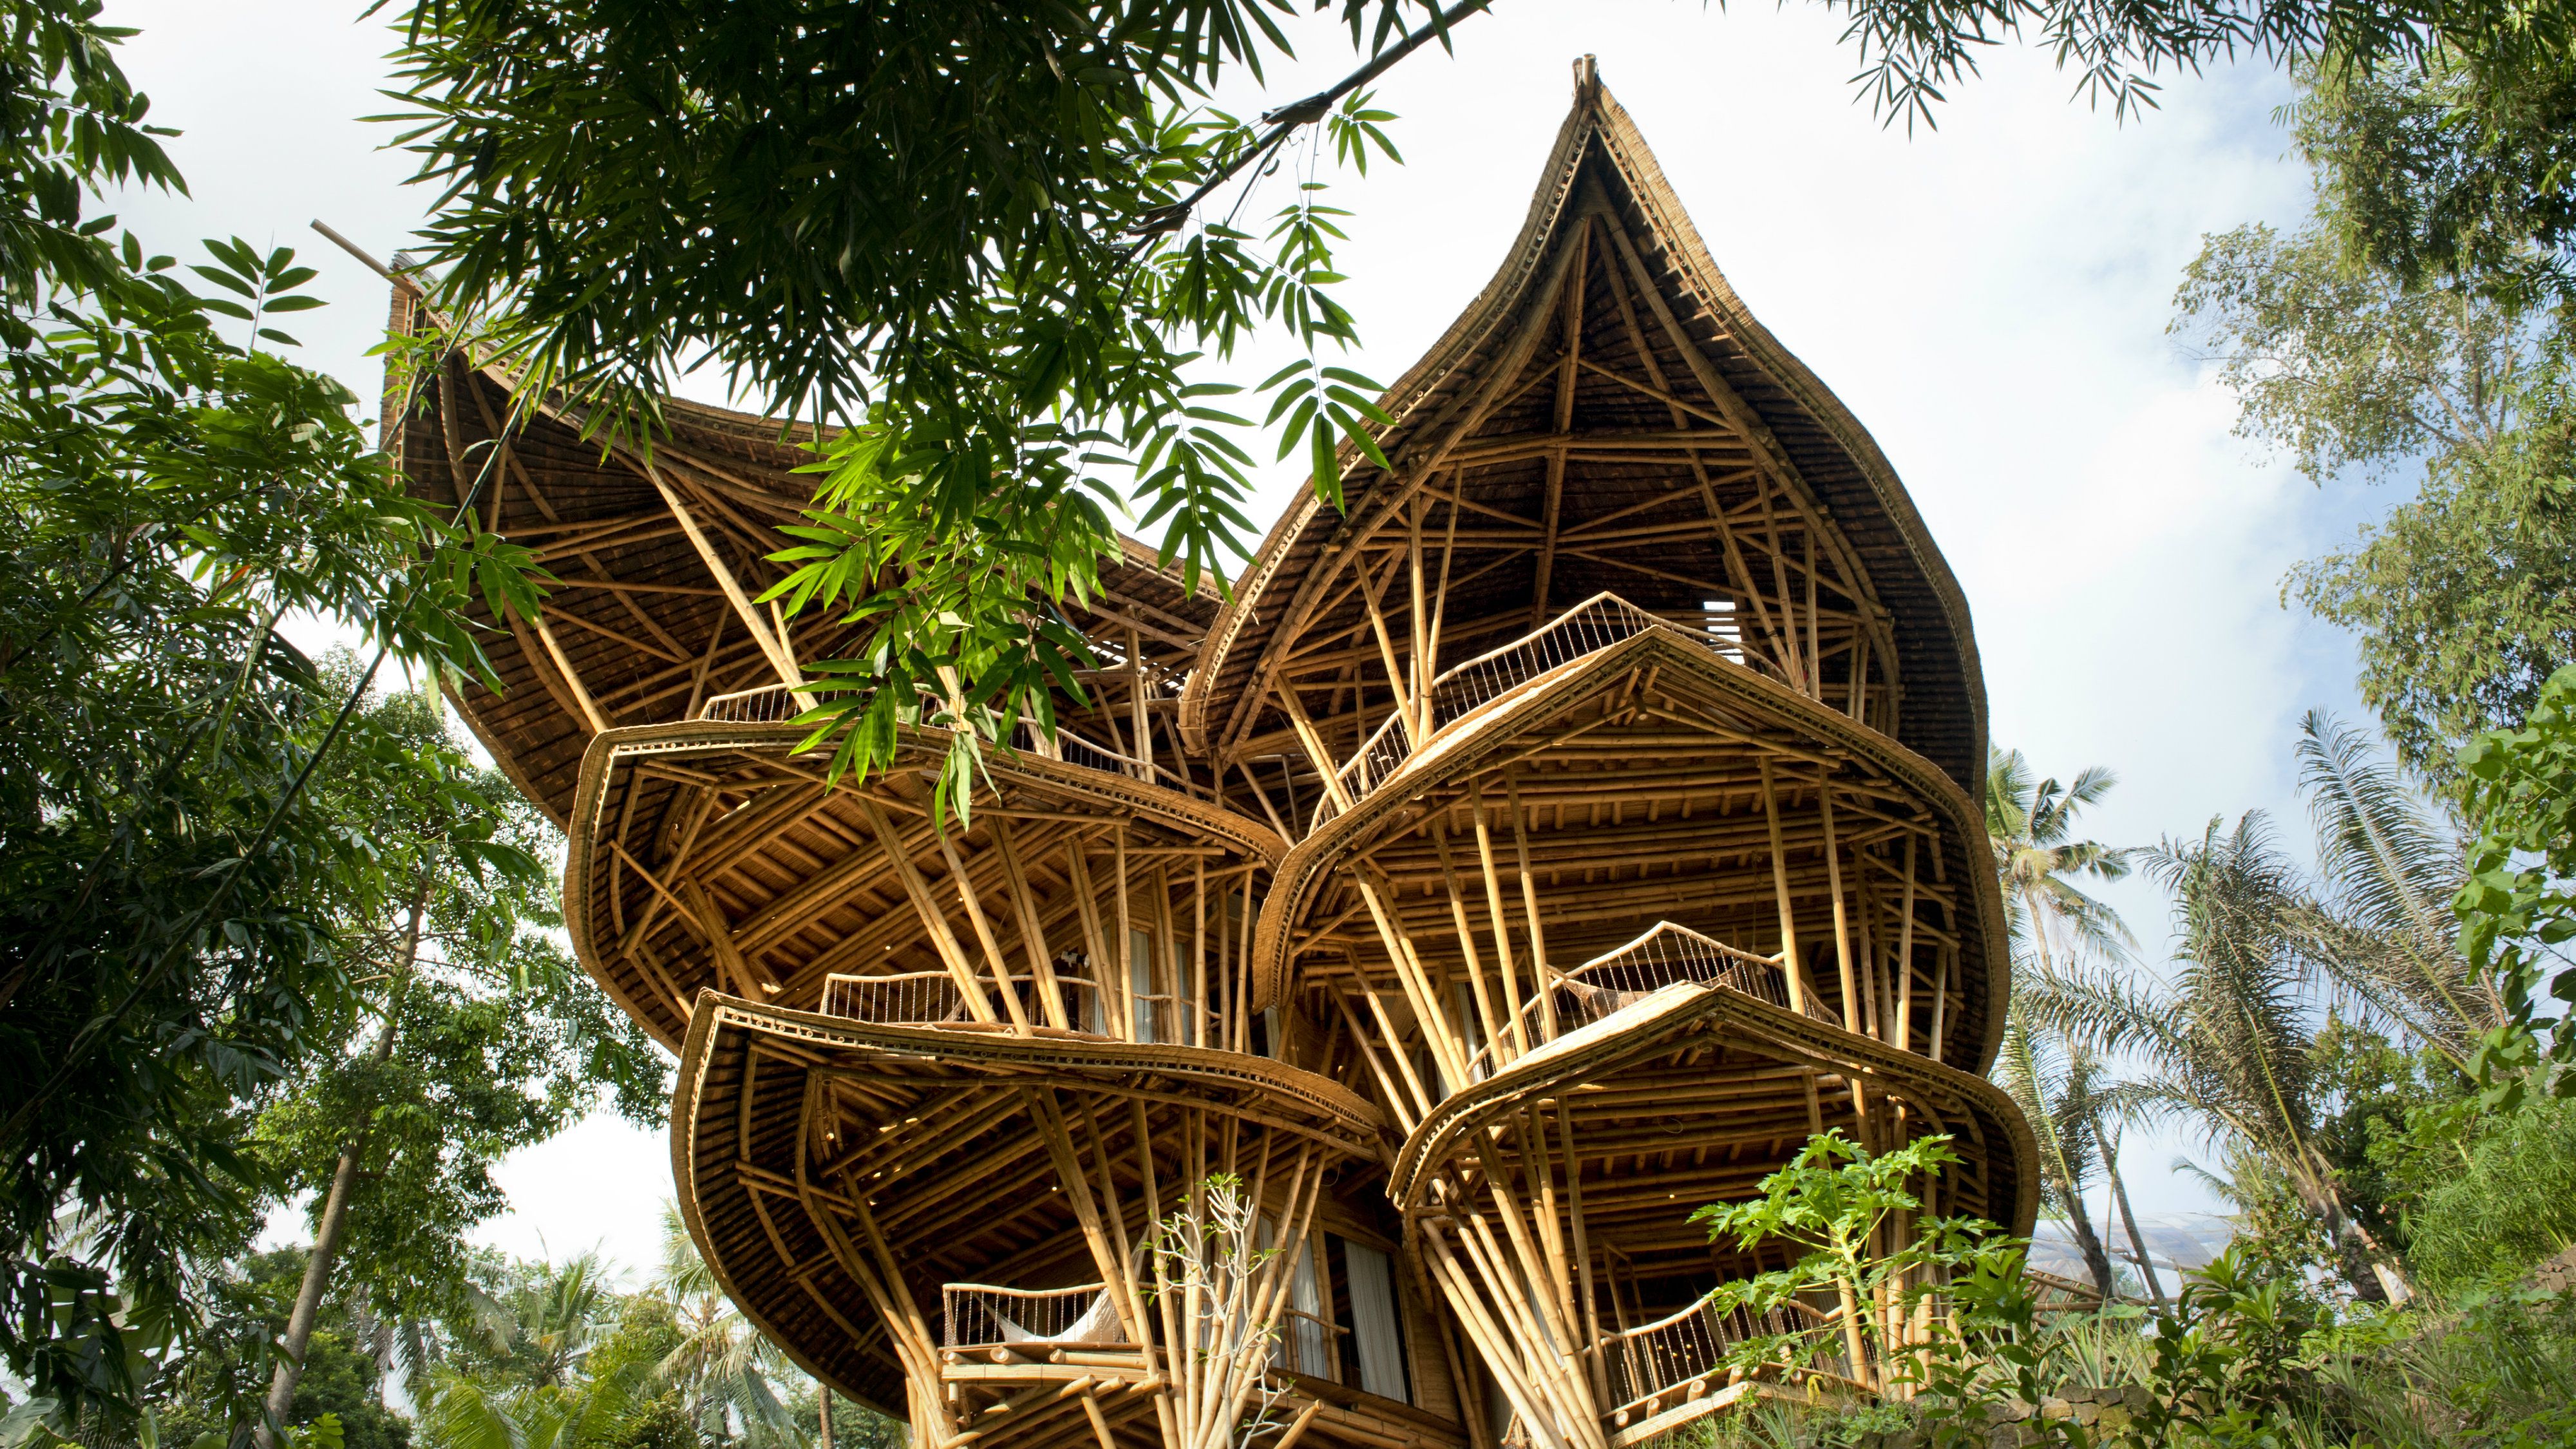 خانه به چوب بامبو از دیگر ویژگی های بامبو،مقاومت آن در برابر رطوبت است.